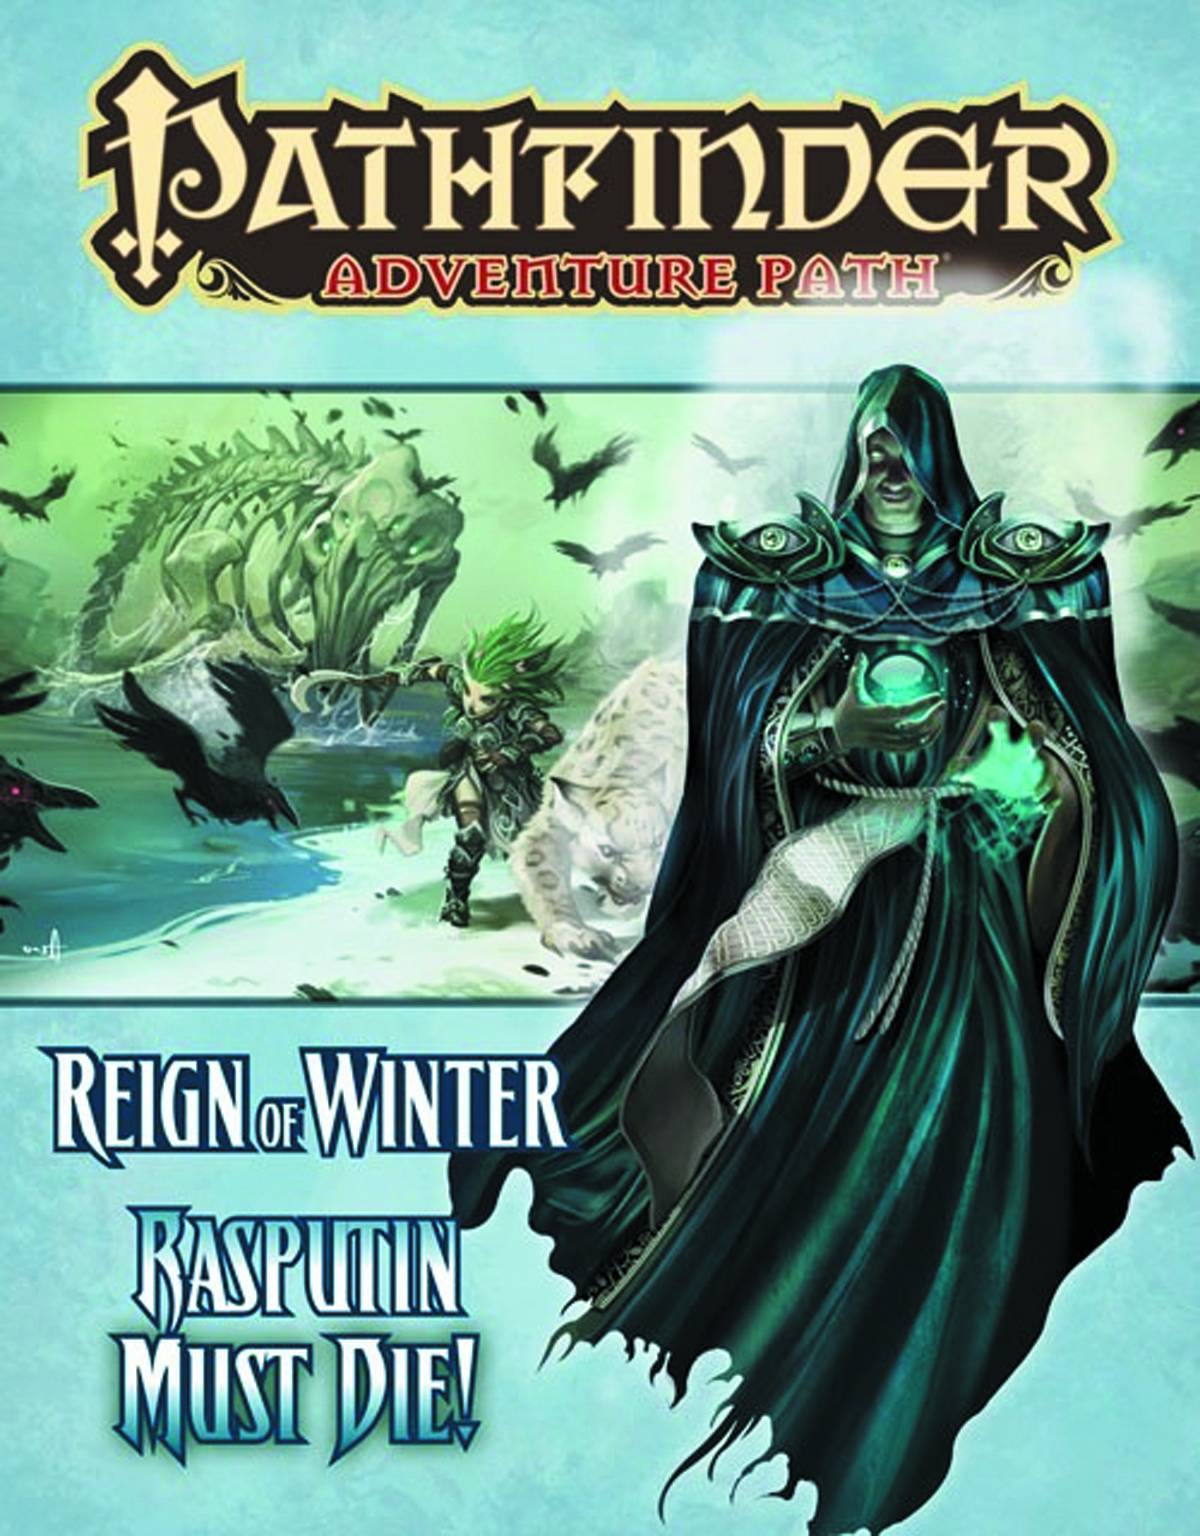 Pathfinder Adventure Path Reign of Winter Part 5 Rasputin Must Die